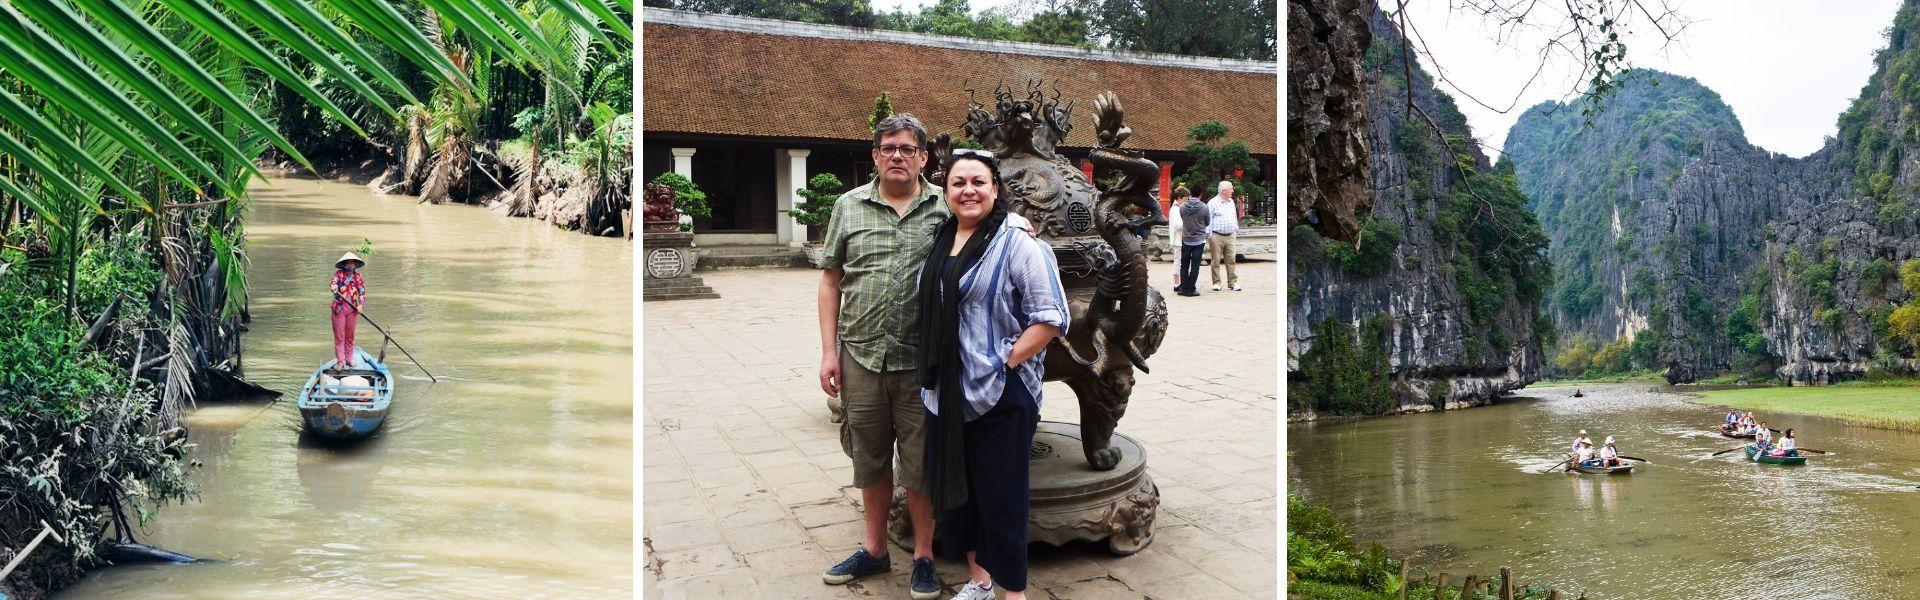 Vacances au Vietnam en famille